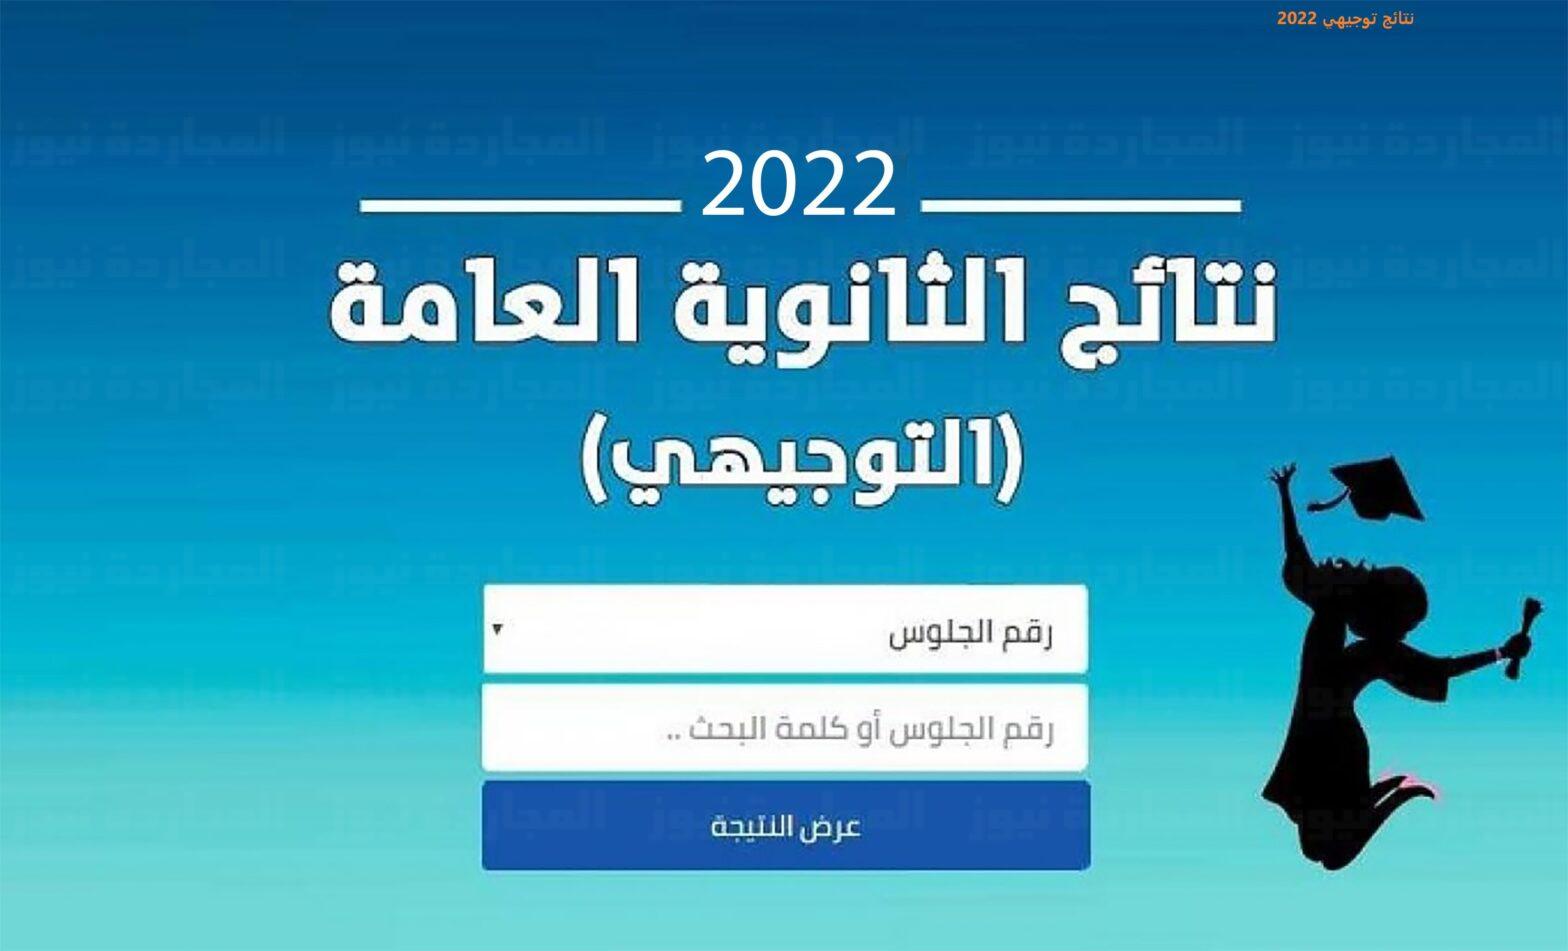 البوكس نيوز – رابط نتائج التوجيهي الأردن 2022 من خلال موقع وزارة التربية والتعليم moe.gov.jo